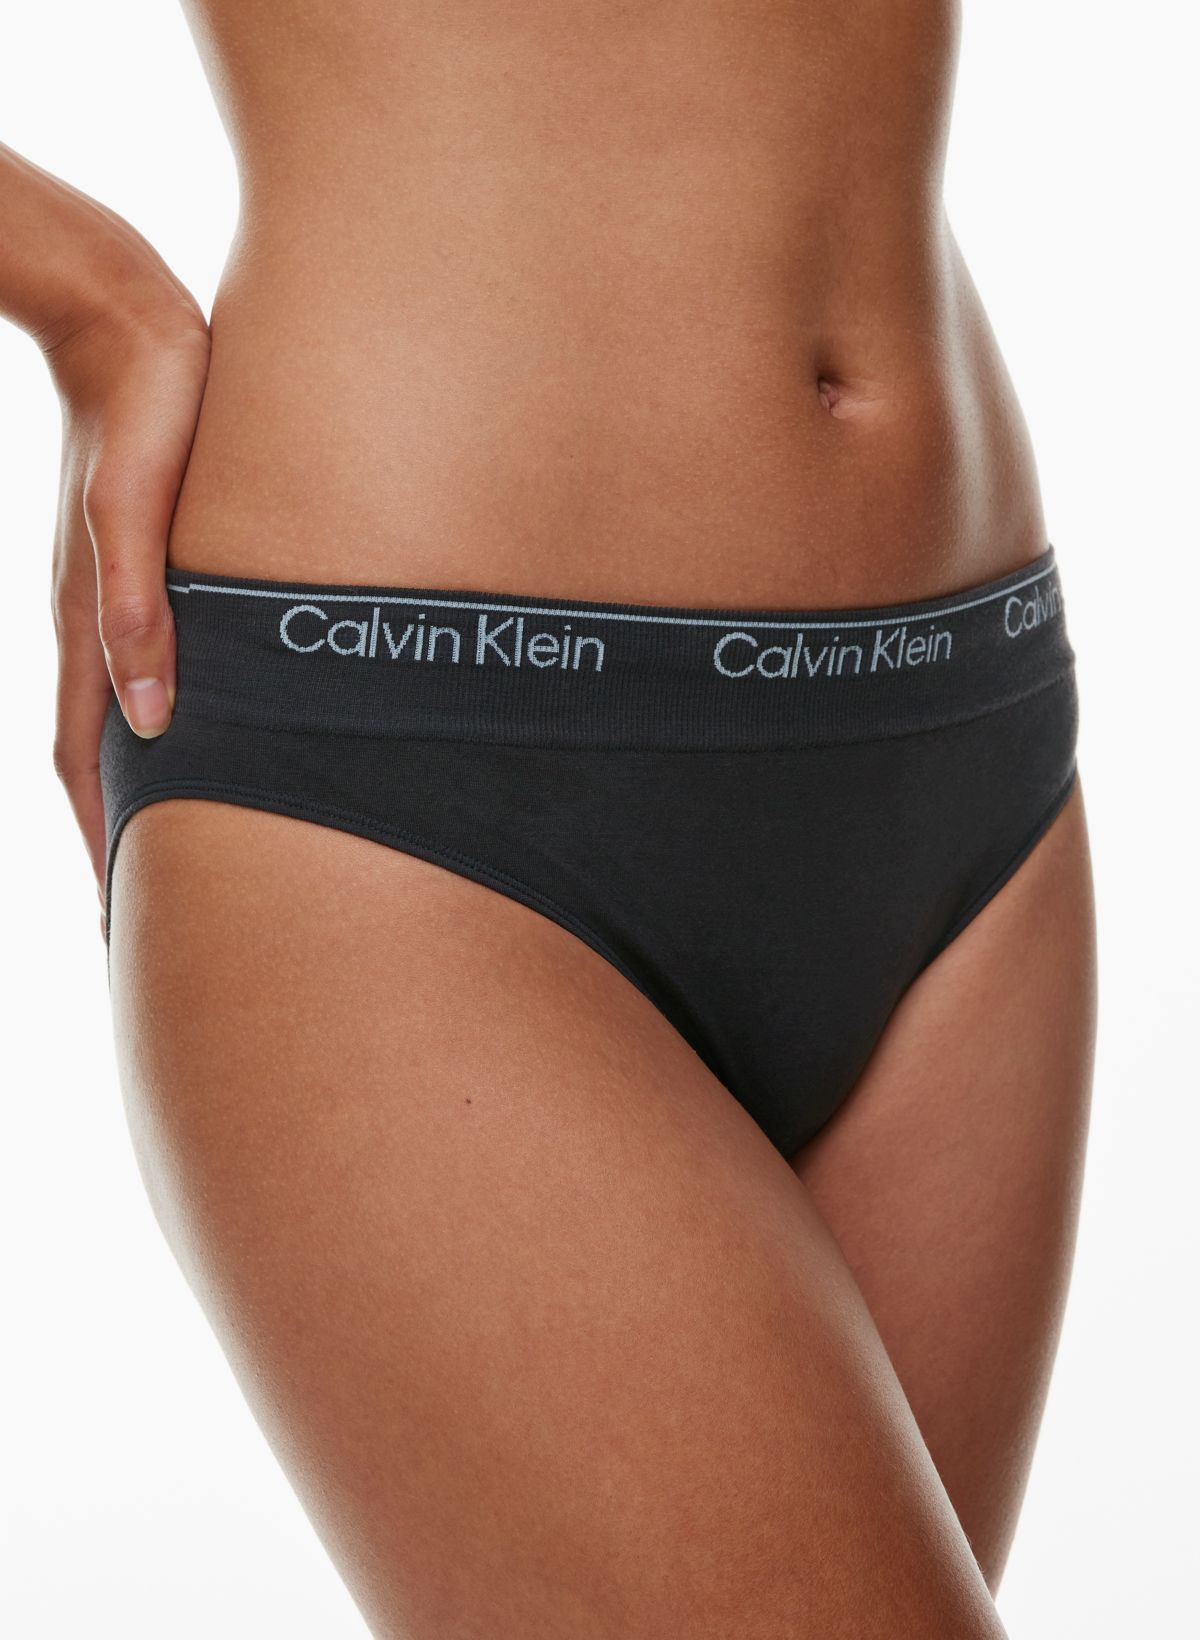 Calvin Klein Women's Underwear Modern Cotton Bikini Cut Briefs in